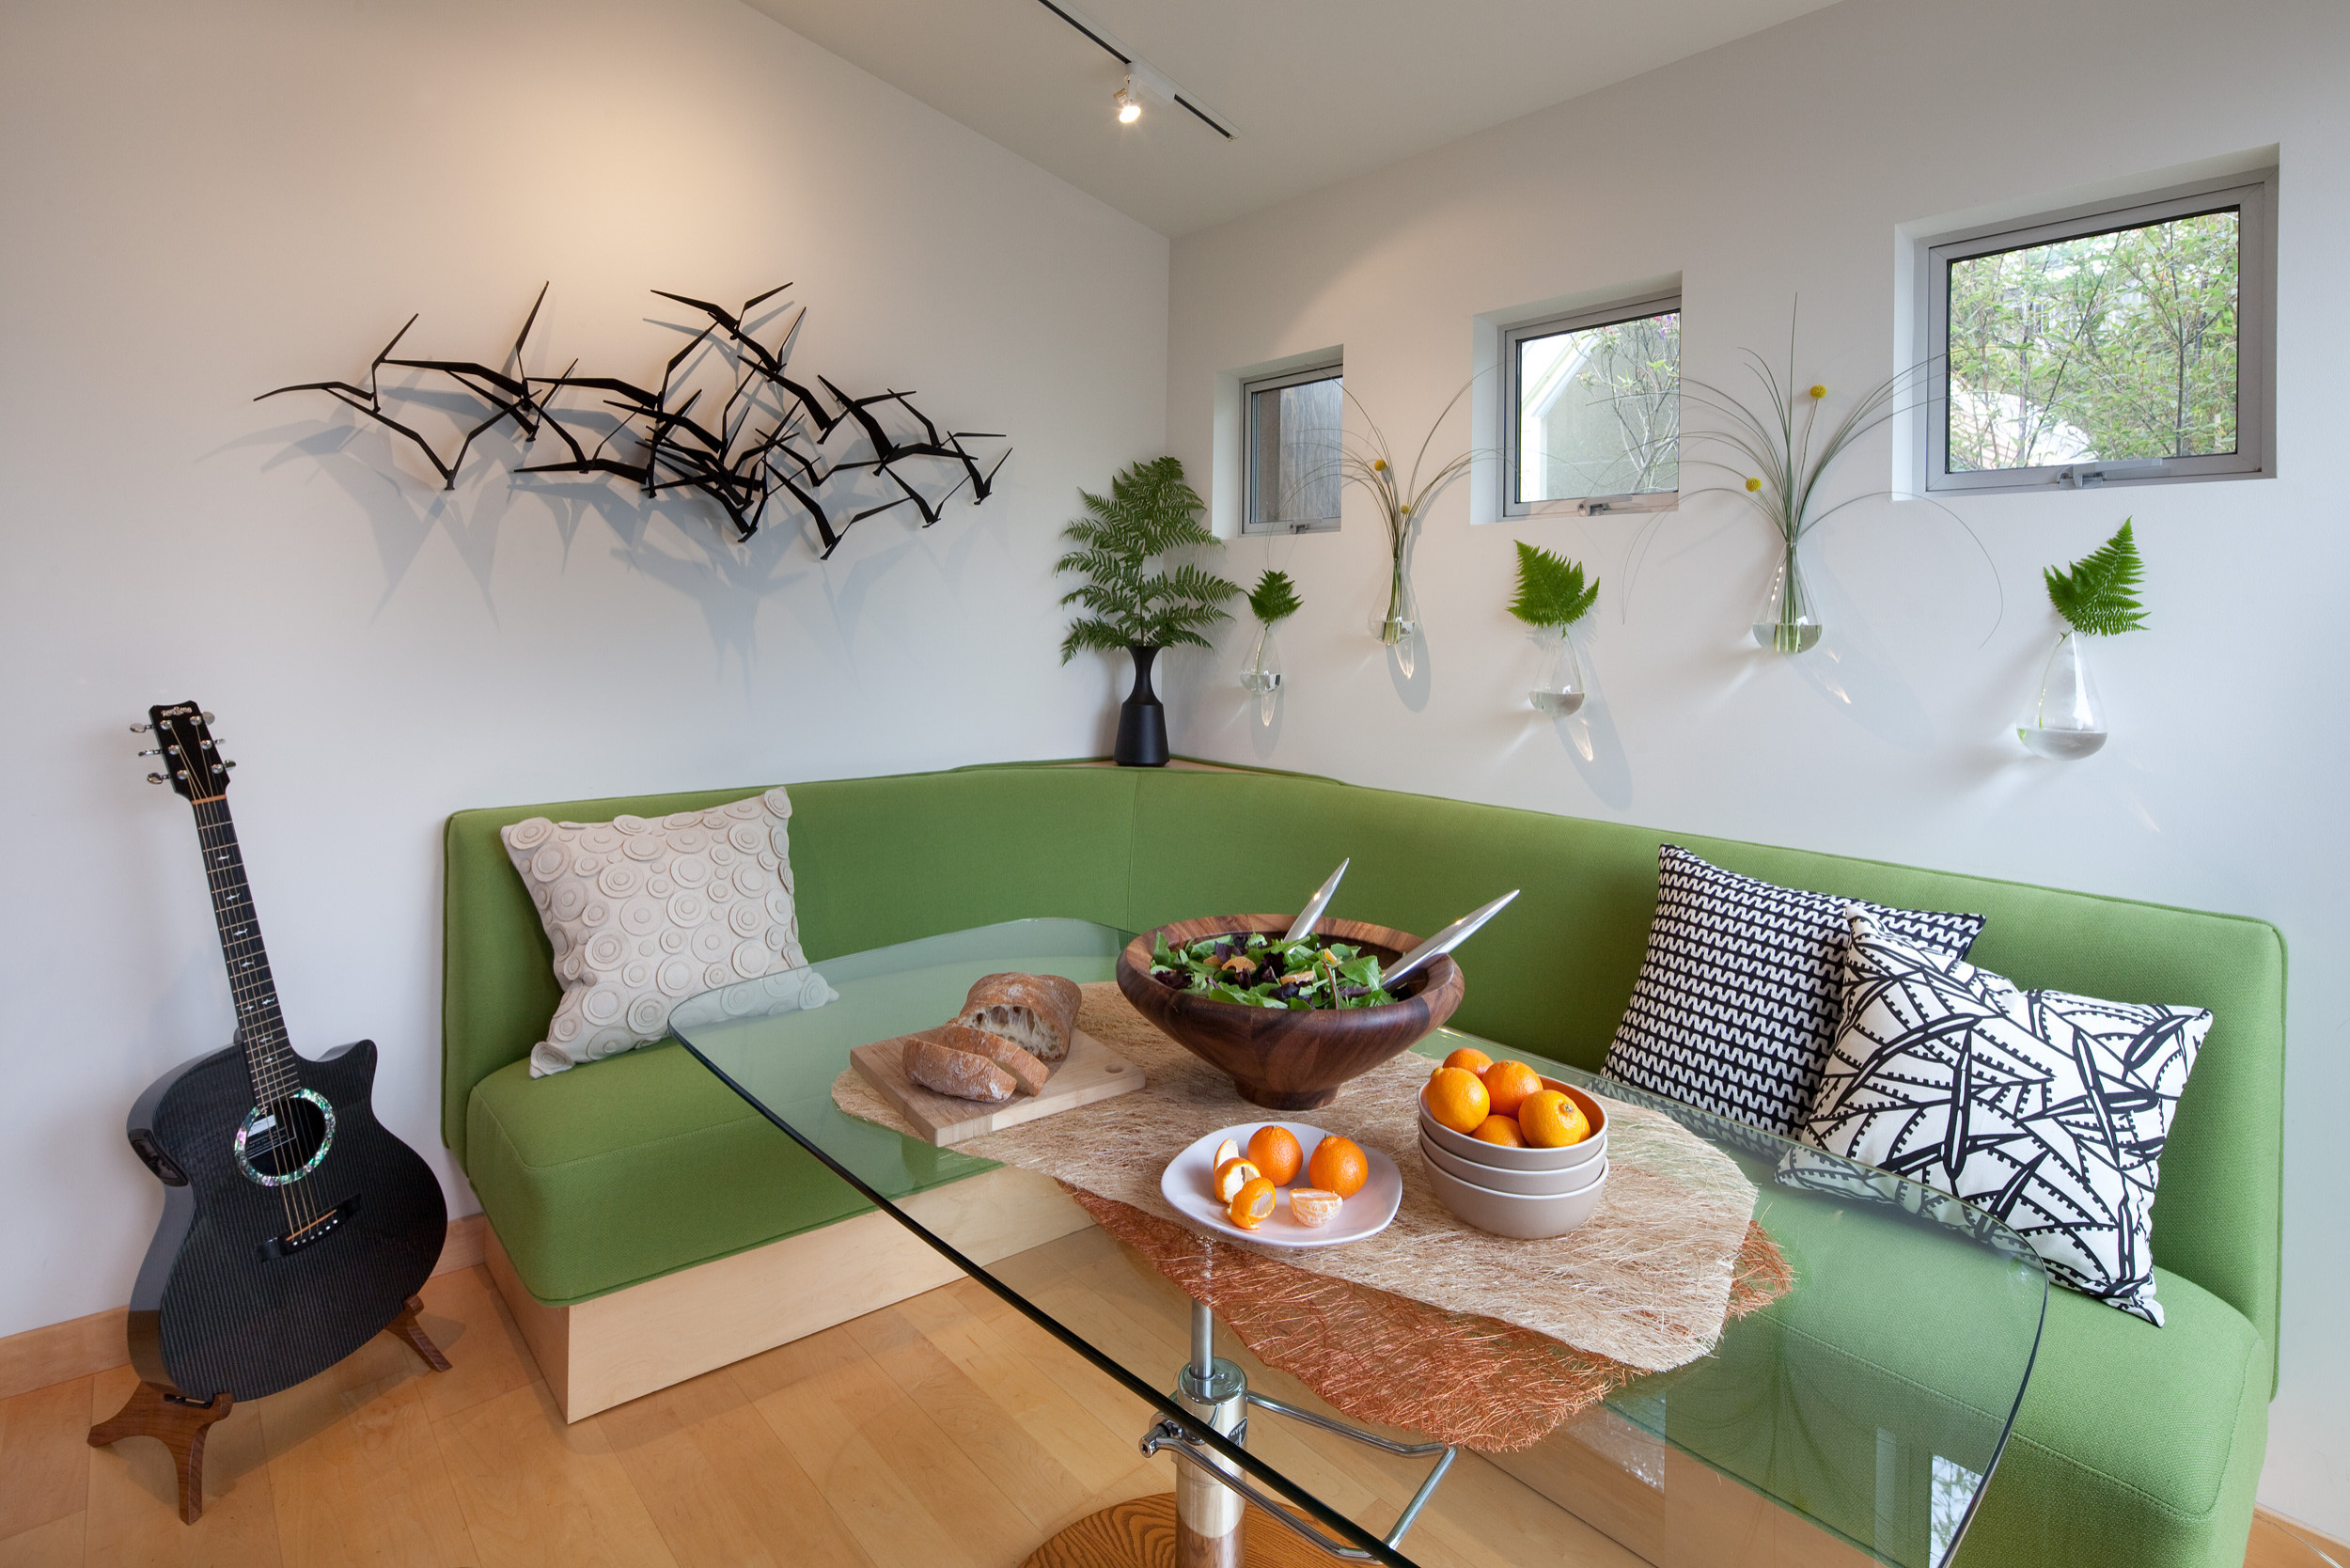 Dining Table Behind Sofa - Photos & Ideas | Houzz